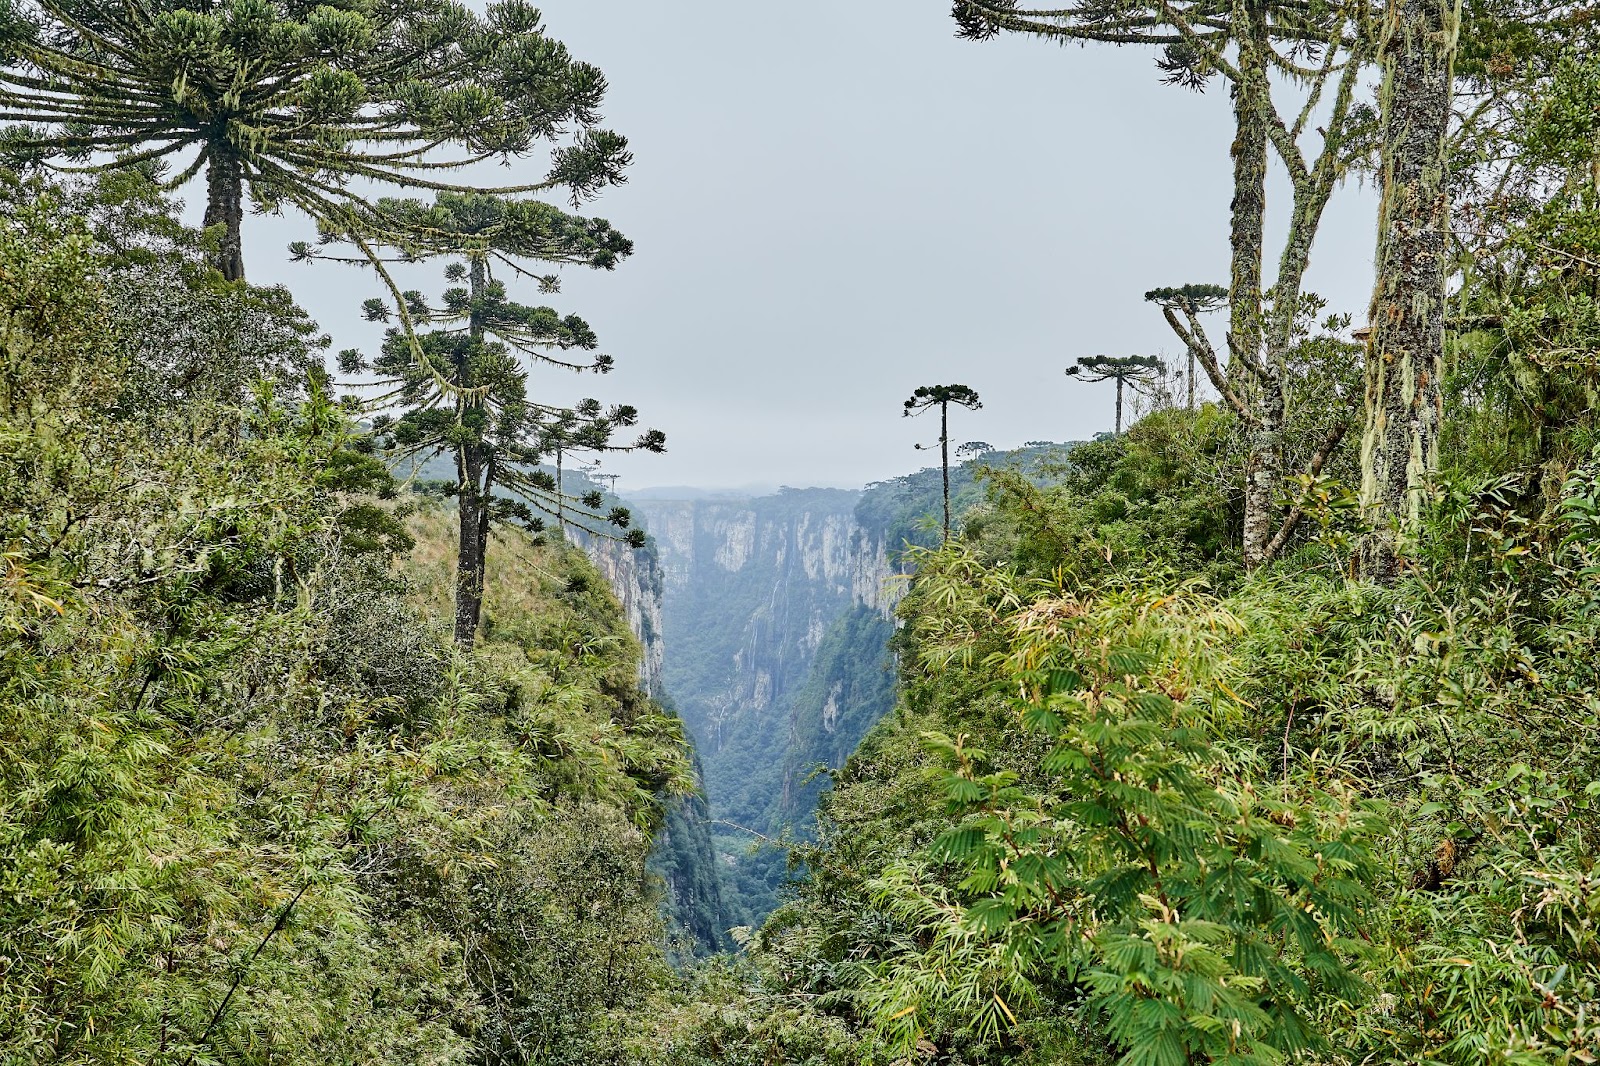 Cânion com superfícies dominadas pelas árvores nativas da Mata Atlântica. As araucárias, típicas da região Sul do Brasil, aparecem em destaque